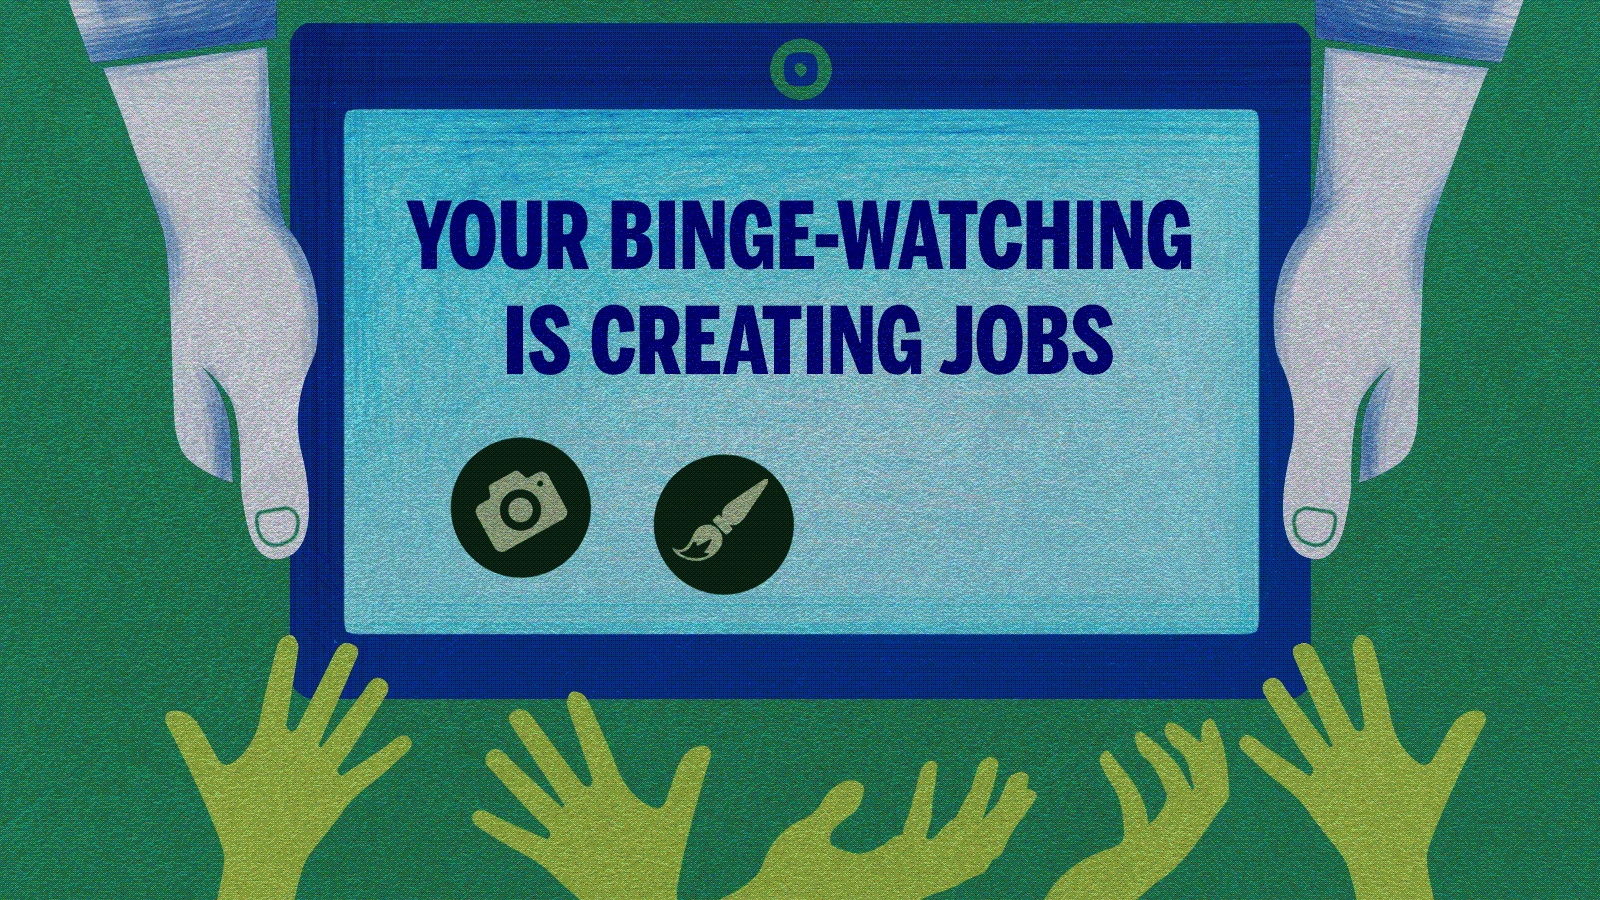 Binge watcher jobs in india